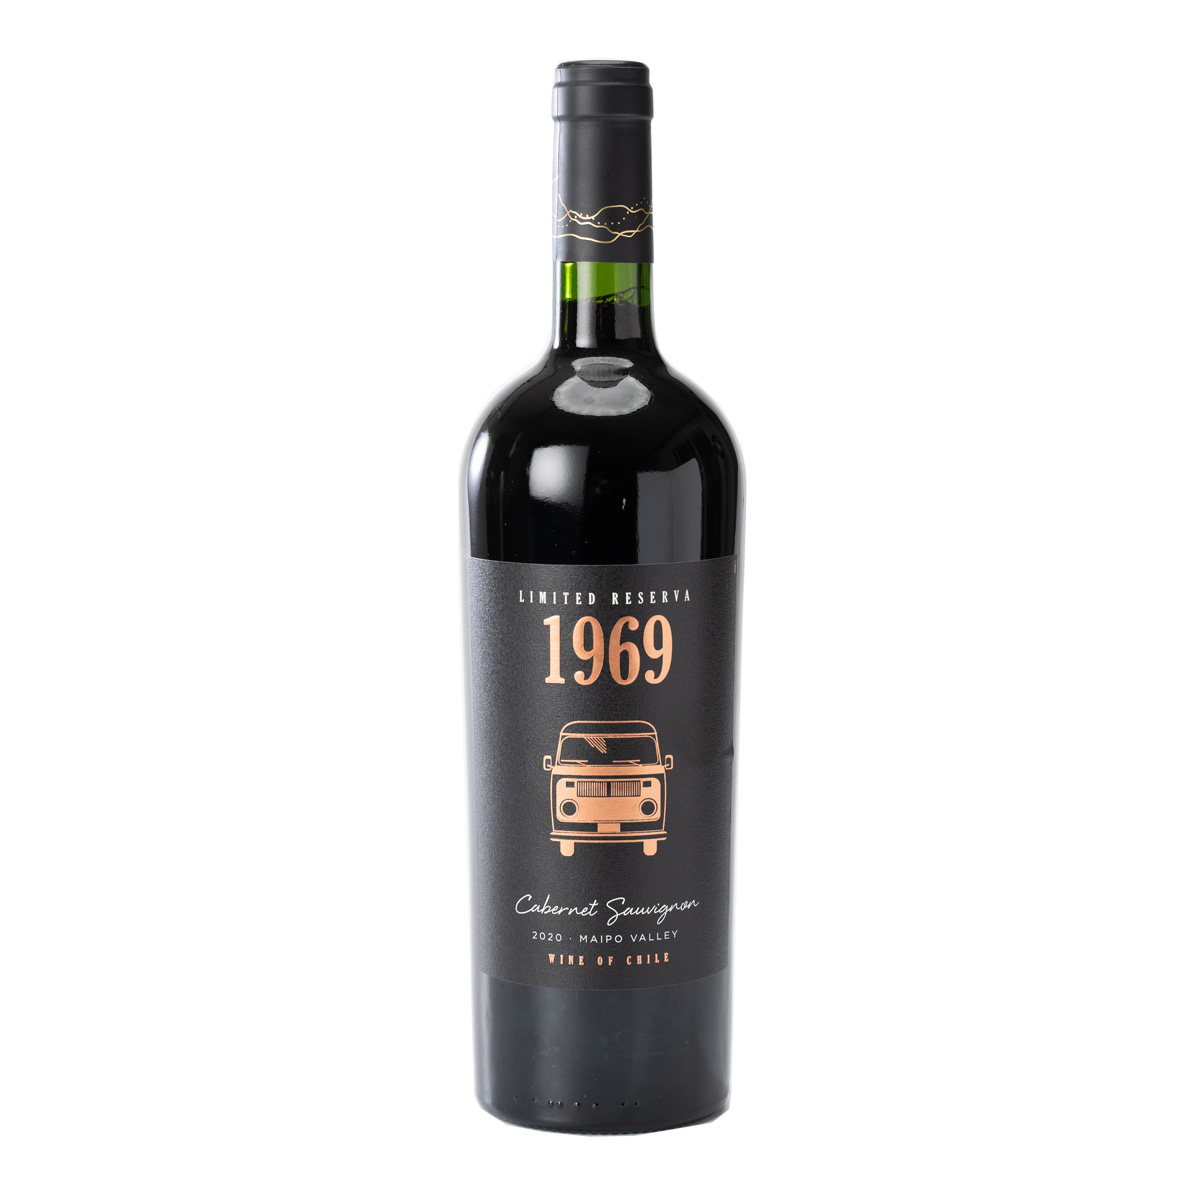 智利迈坡山谷1969限量珍藏赤霞珠干红葡萄酒